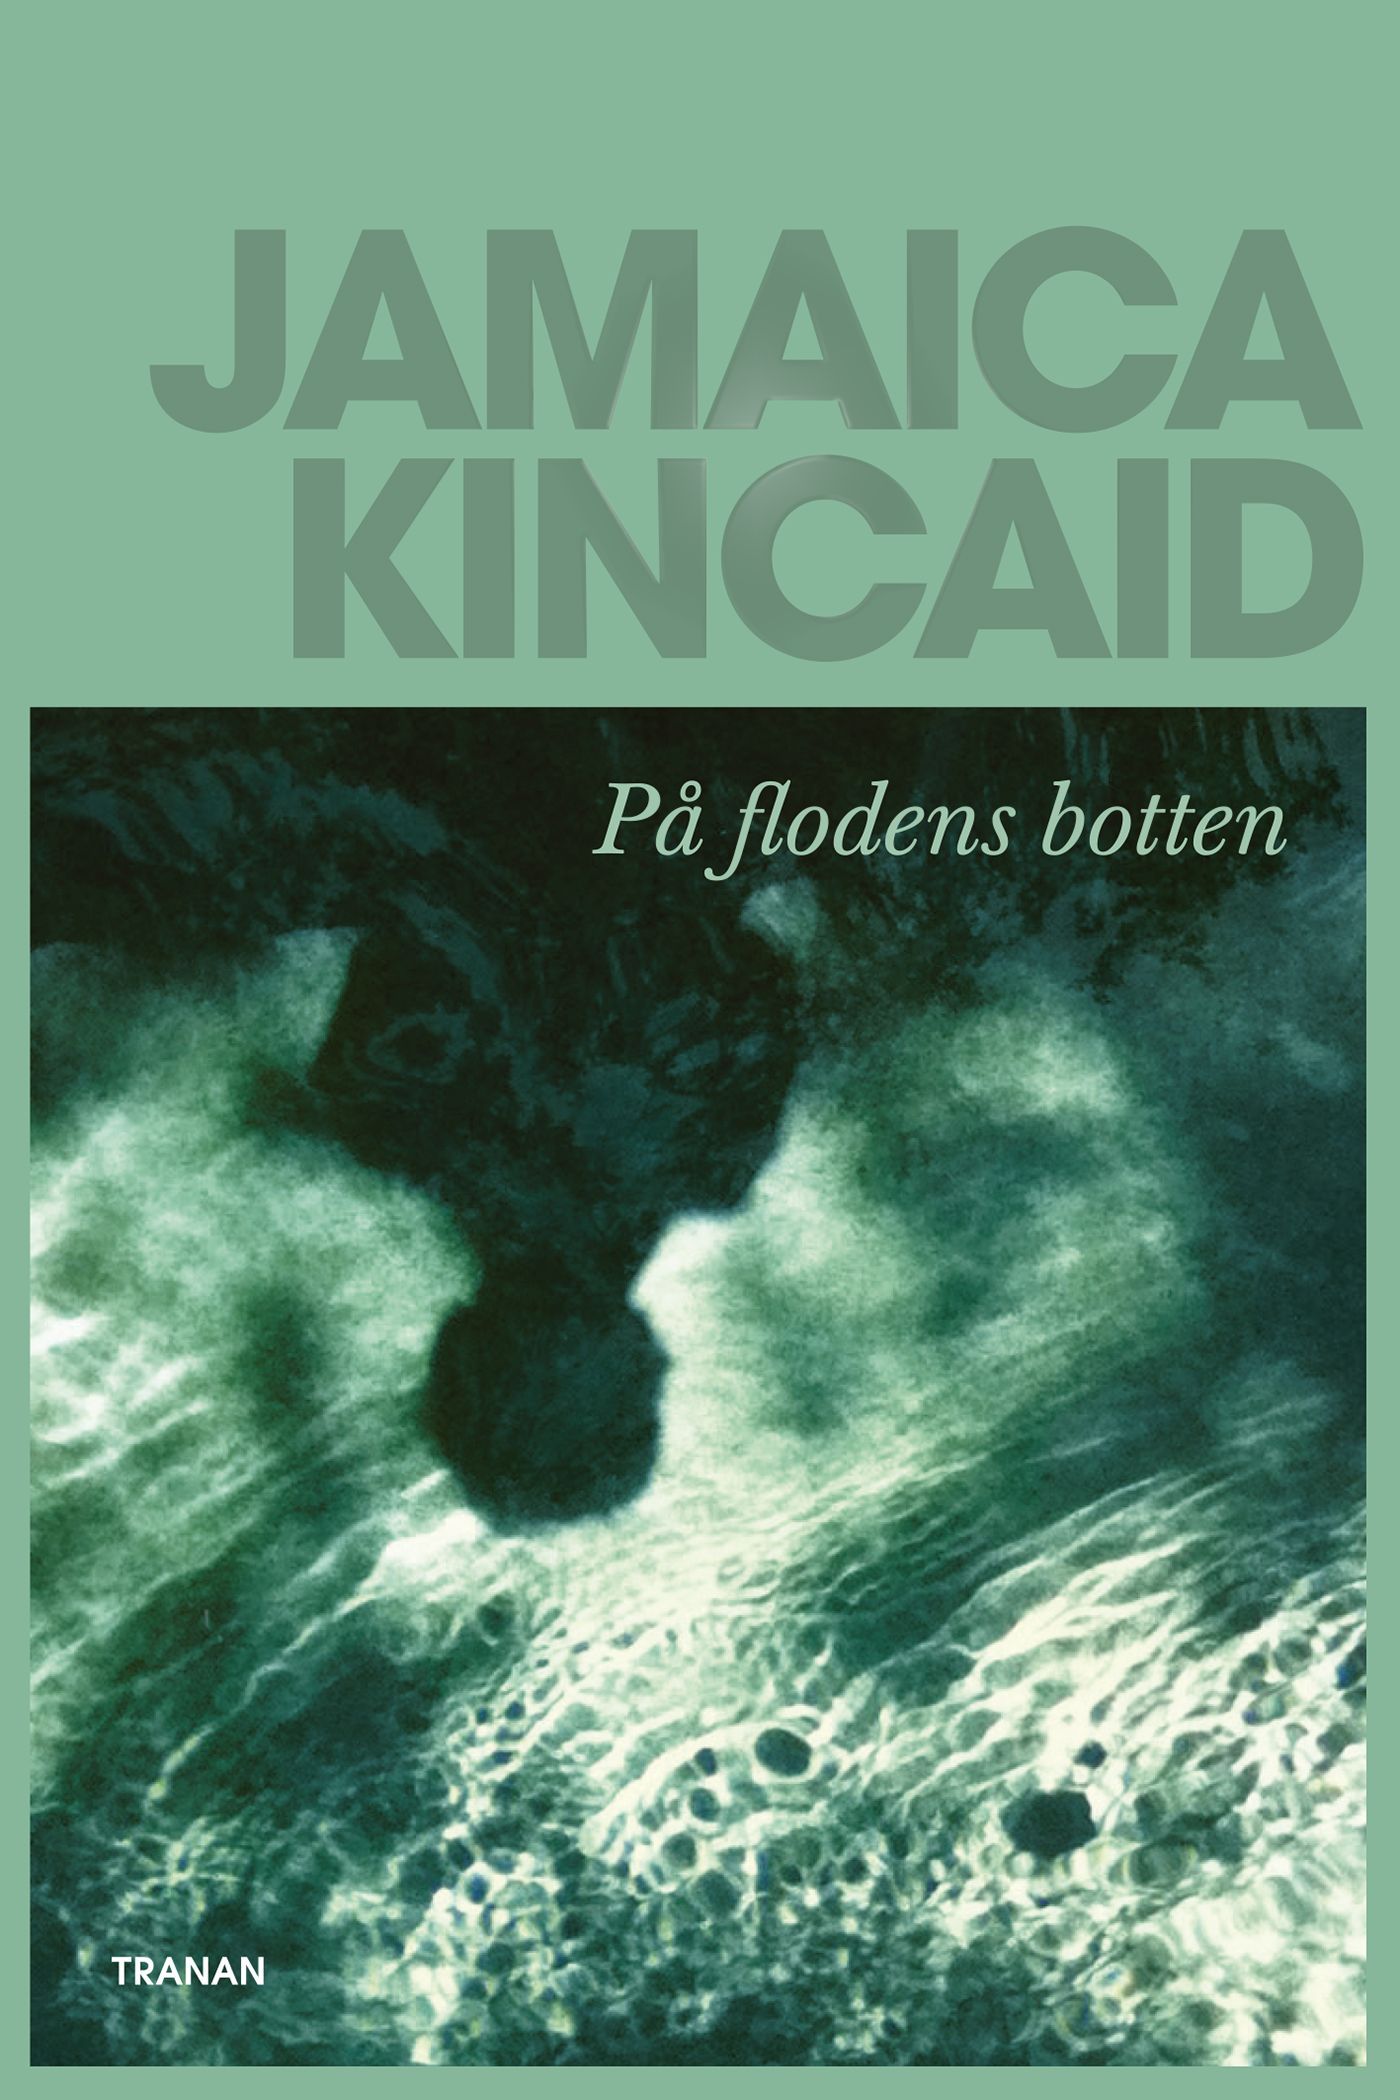 På flodens botten, e-bog af Jamaica Kincaid